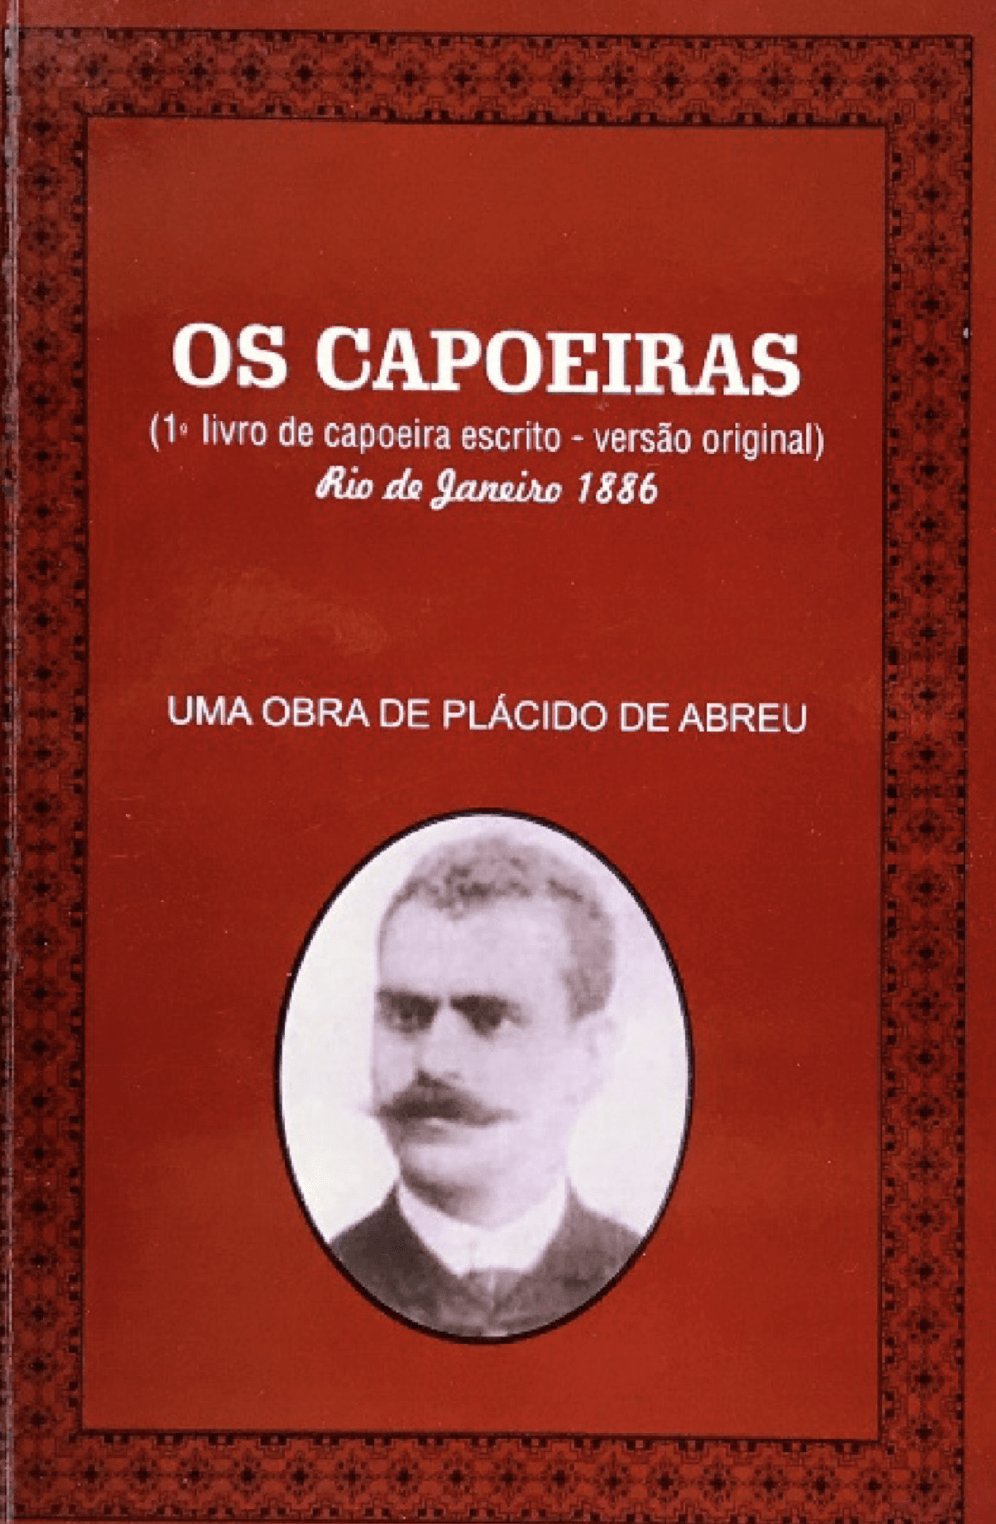 Capoeira – Wikipédia, a enciclopédia livre